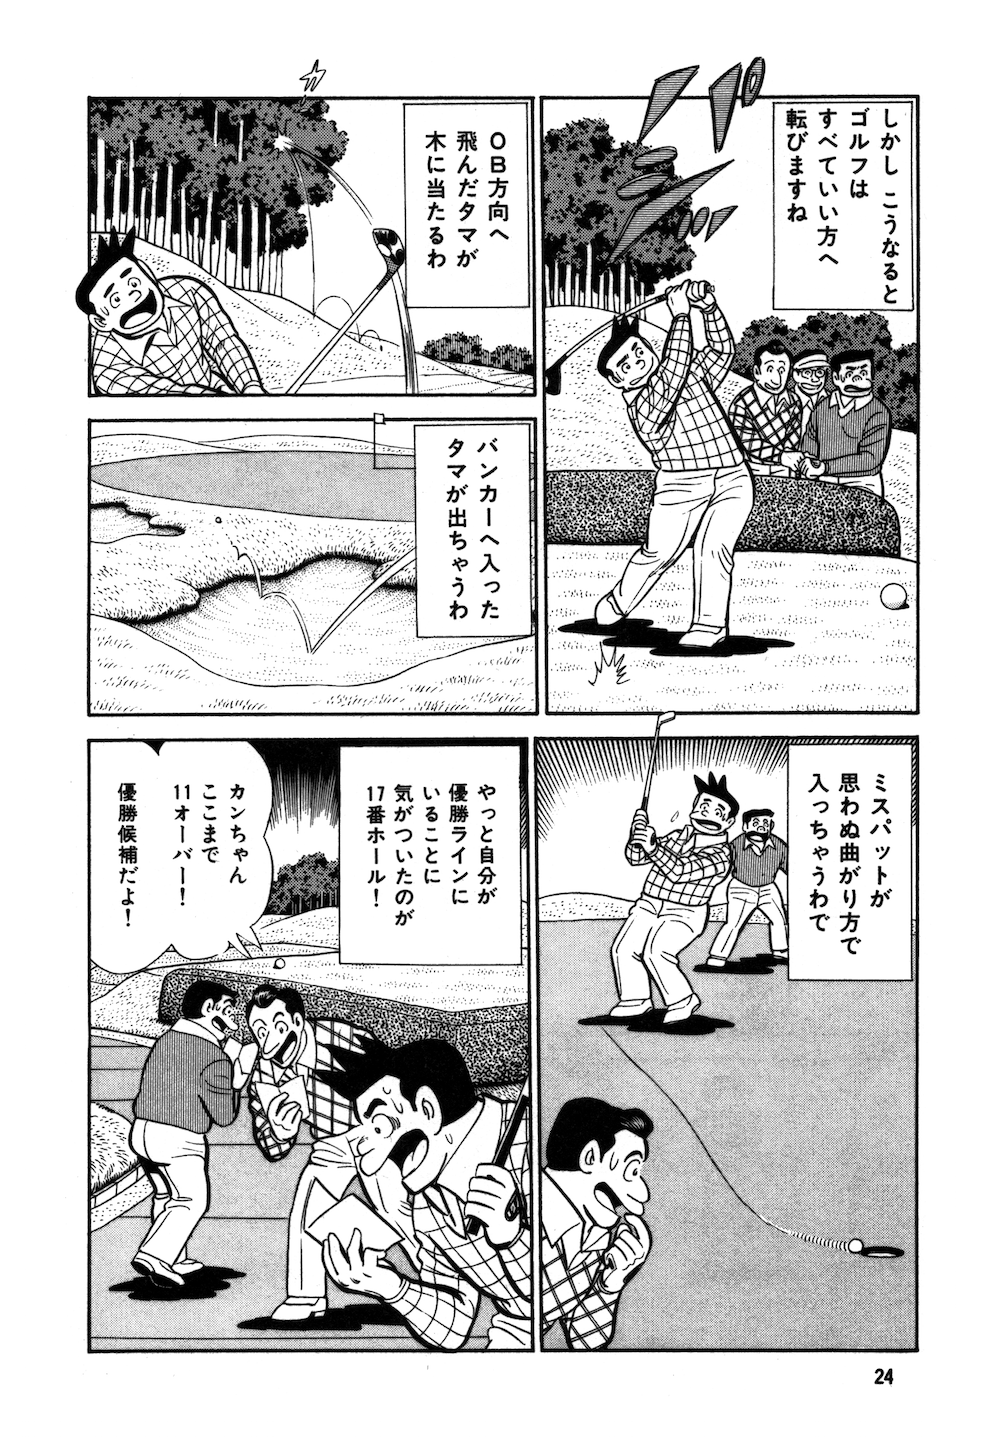 ゴルフは気持ち 第1話 無料で読めるゴルフレッスンコミックweb 日本文芸社